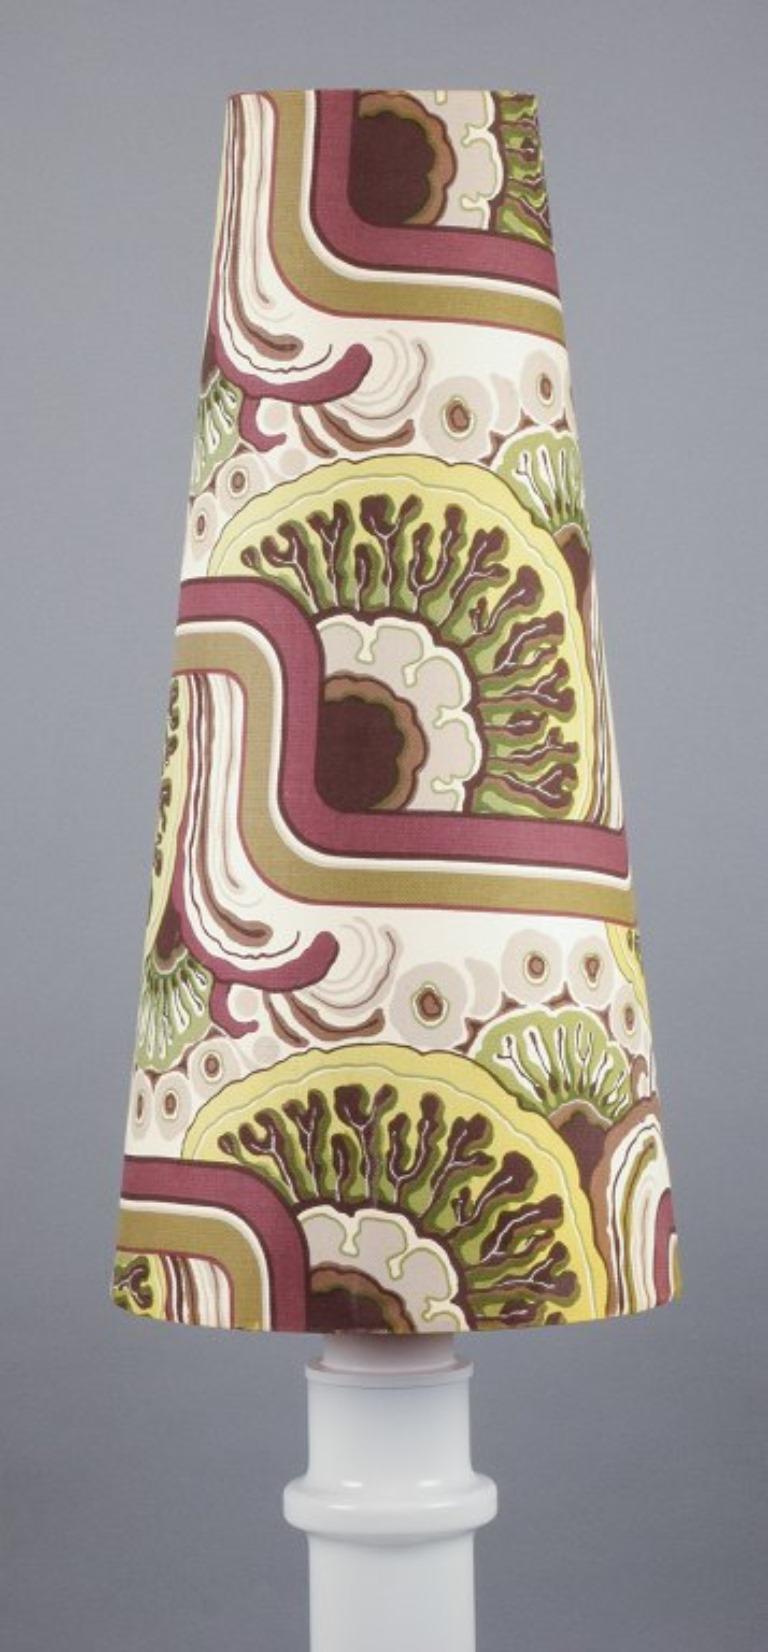 Design/One. Lampadaire colossal en verre avec un grand abat-jour en textile au design rétro.
Années 1970/80.
En parfait état.
Dimensions : H 140,0 cm x P 38,0 cm : H 140,0 cm x D 38,0 cm.